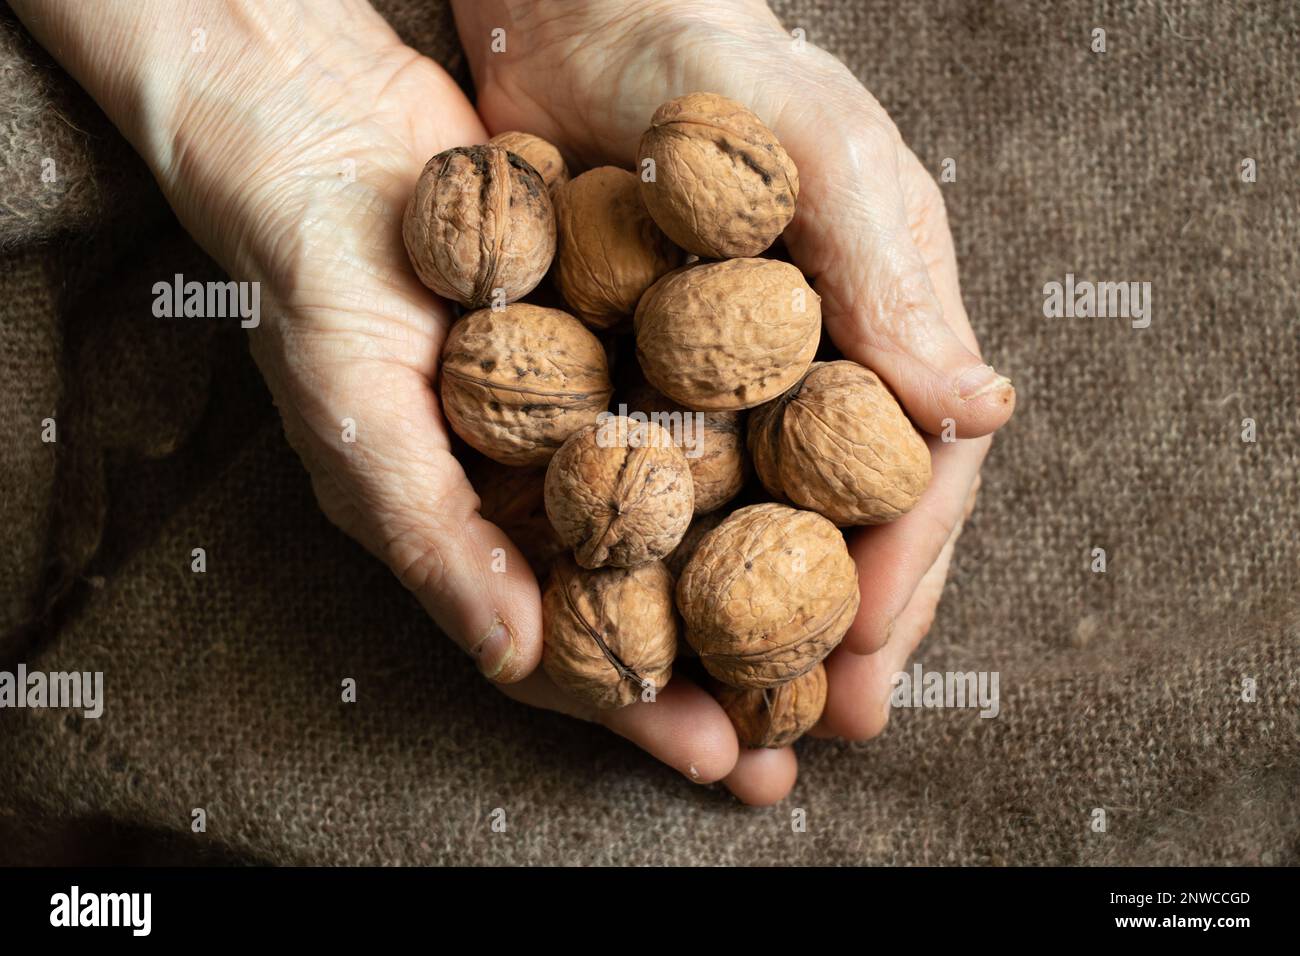 vecchia donna che tiene un sacco di noci nelle sue mani a casa sullo sfondo di uno scialle marrone, noci nelle mani della nonna, cibo sano, cibo vegano Foto Stock